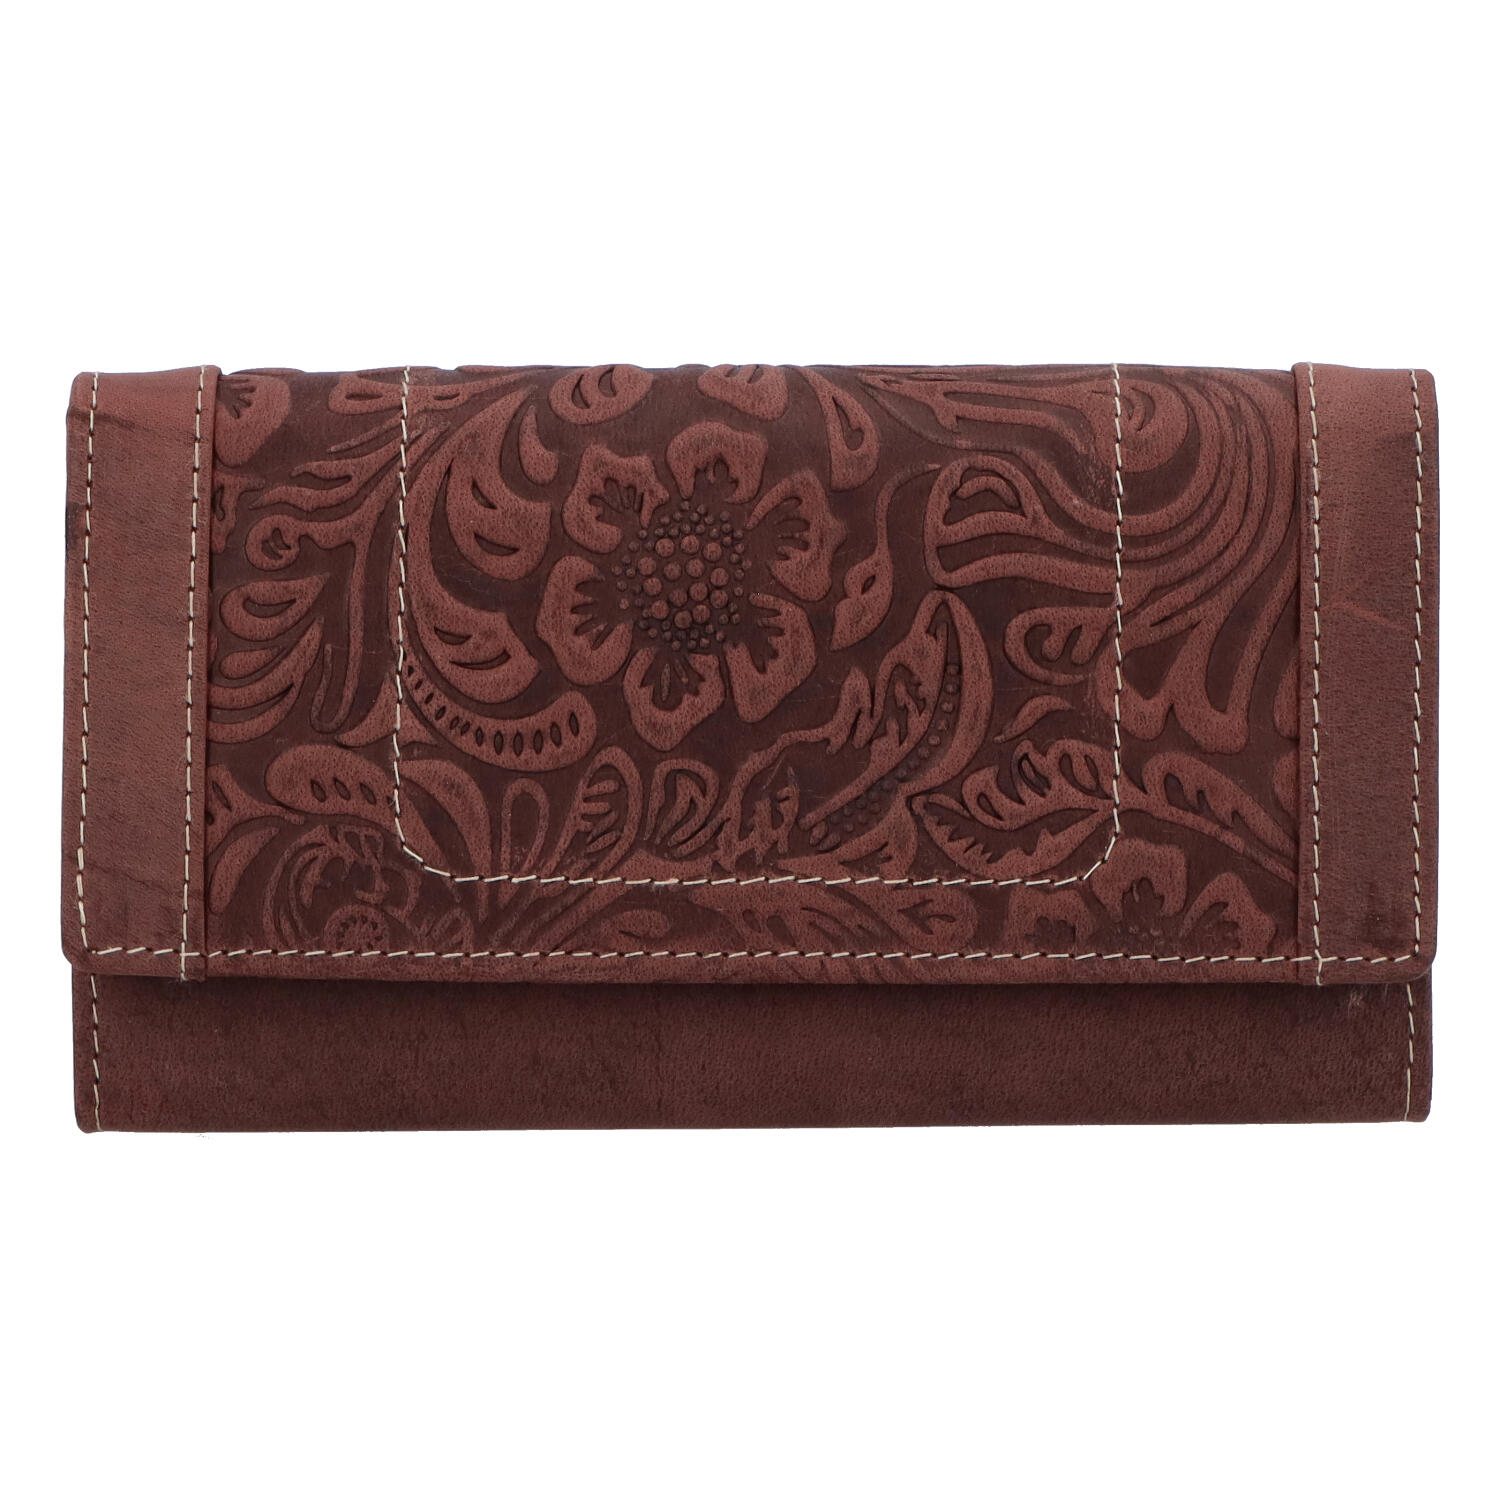 Kožená peněženka bordó se vzorem - Tomas Mayana